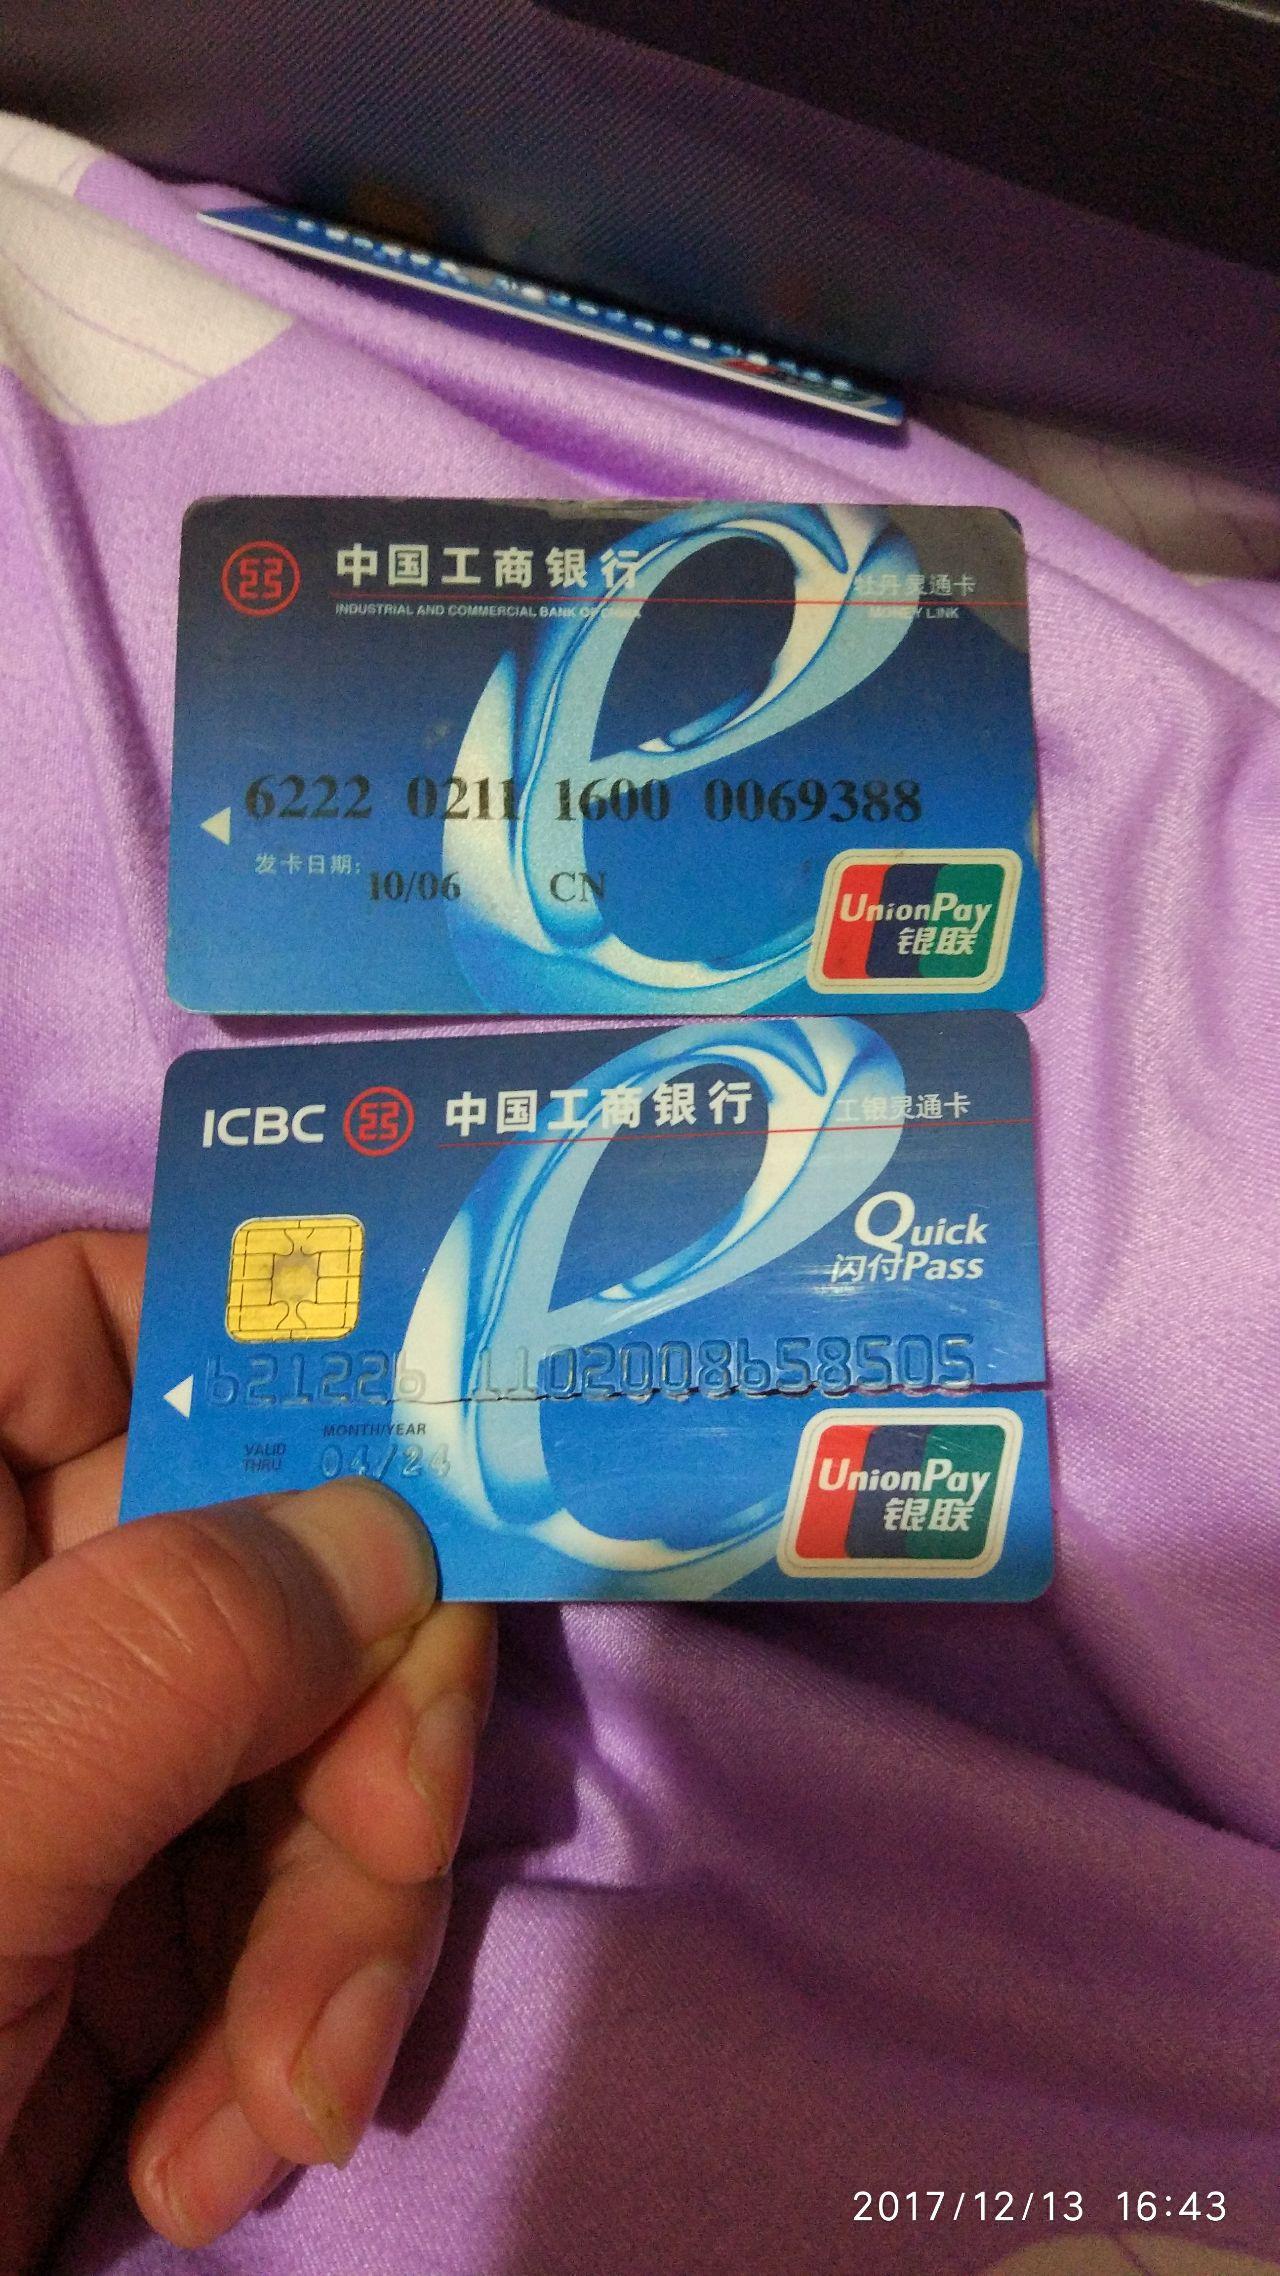 为什么银行卡卡号多用阳文而直接喷印的很少见阴文的更是没见过